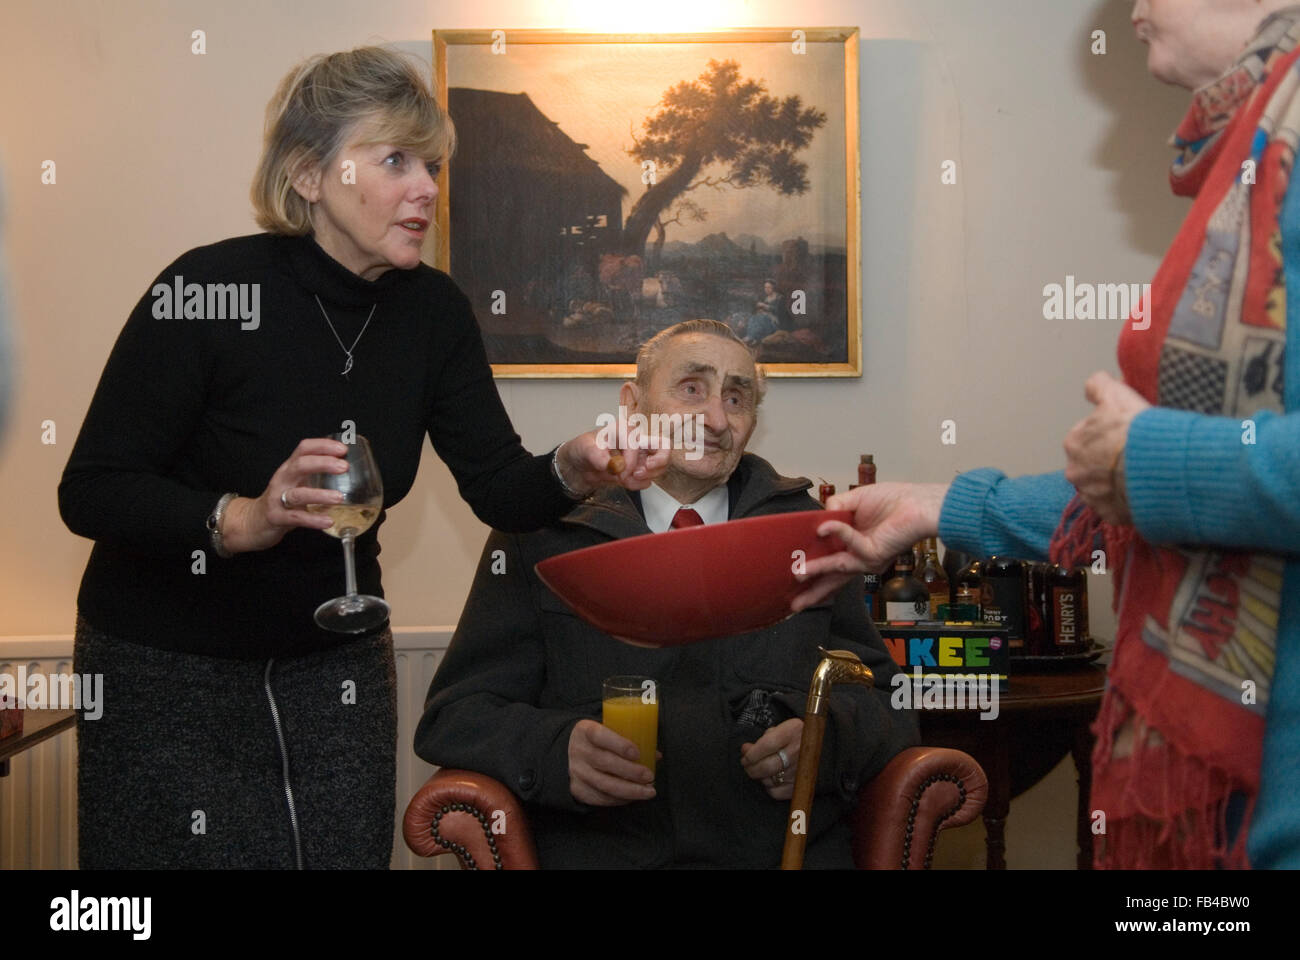 Stuzzichini durante la festa in una casa privata. HOMER SYKES Foto Stock